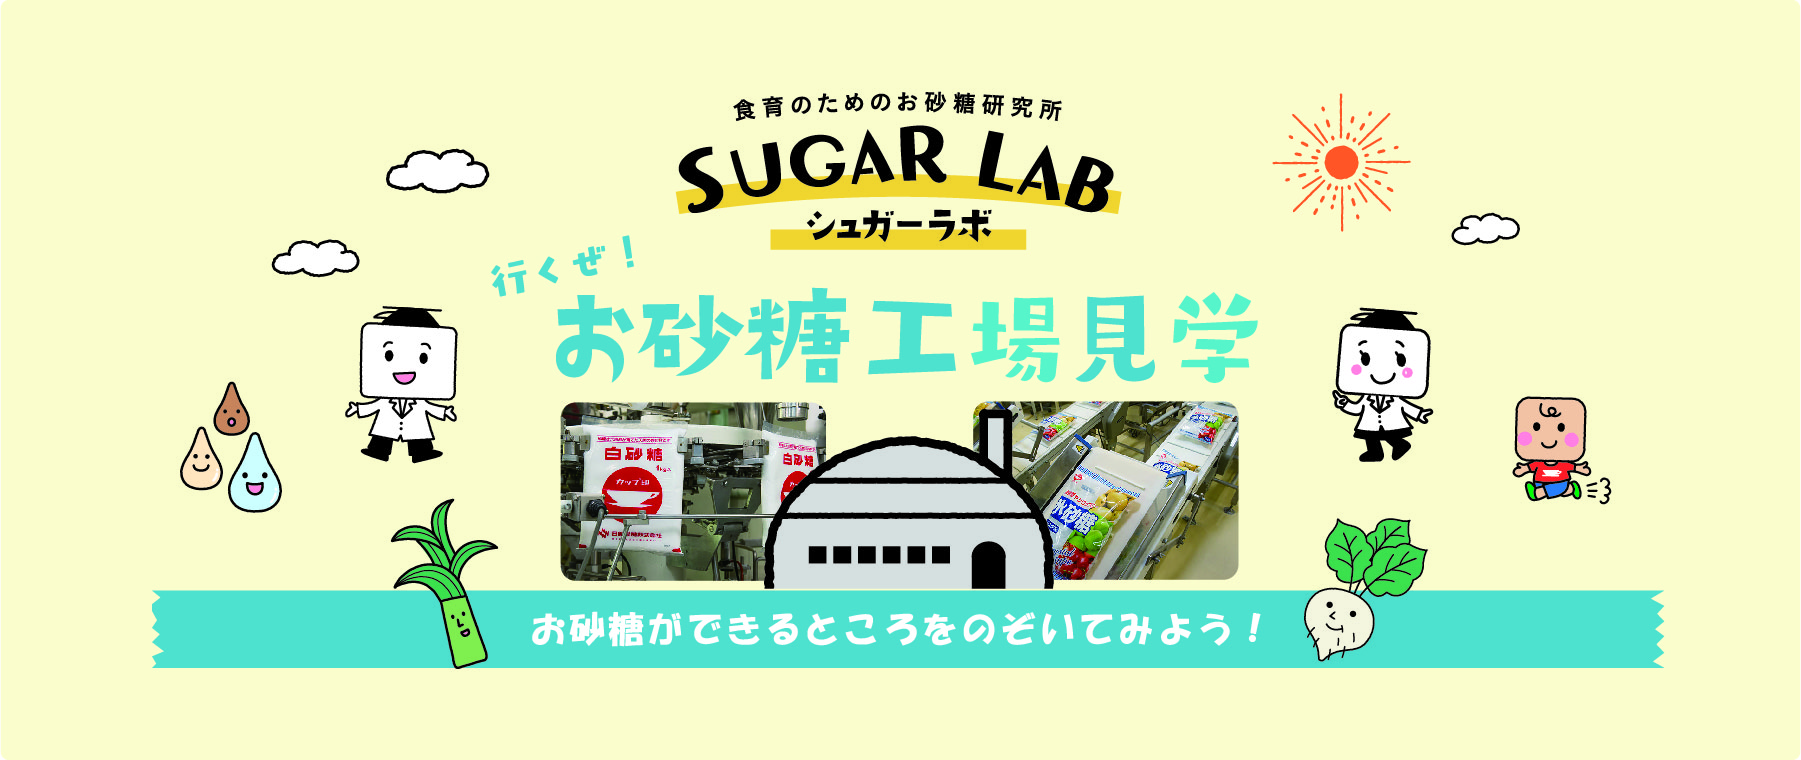 サムネイル 1: 【Webページ工場見学】日新製糖株式会社 「バーチャル工場見学」お砂糖ができるところをのぞいてみよう！